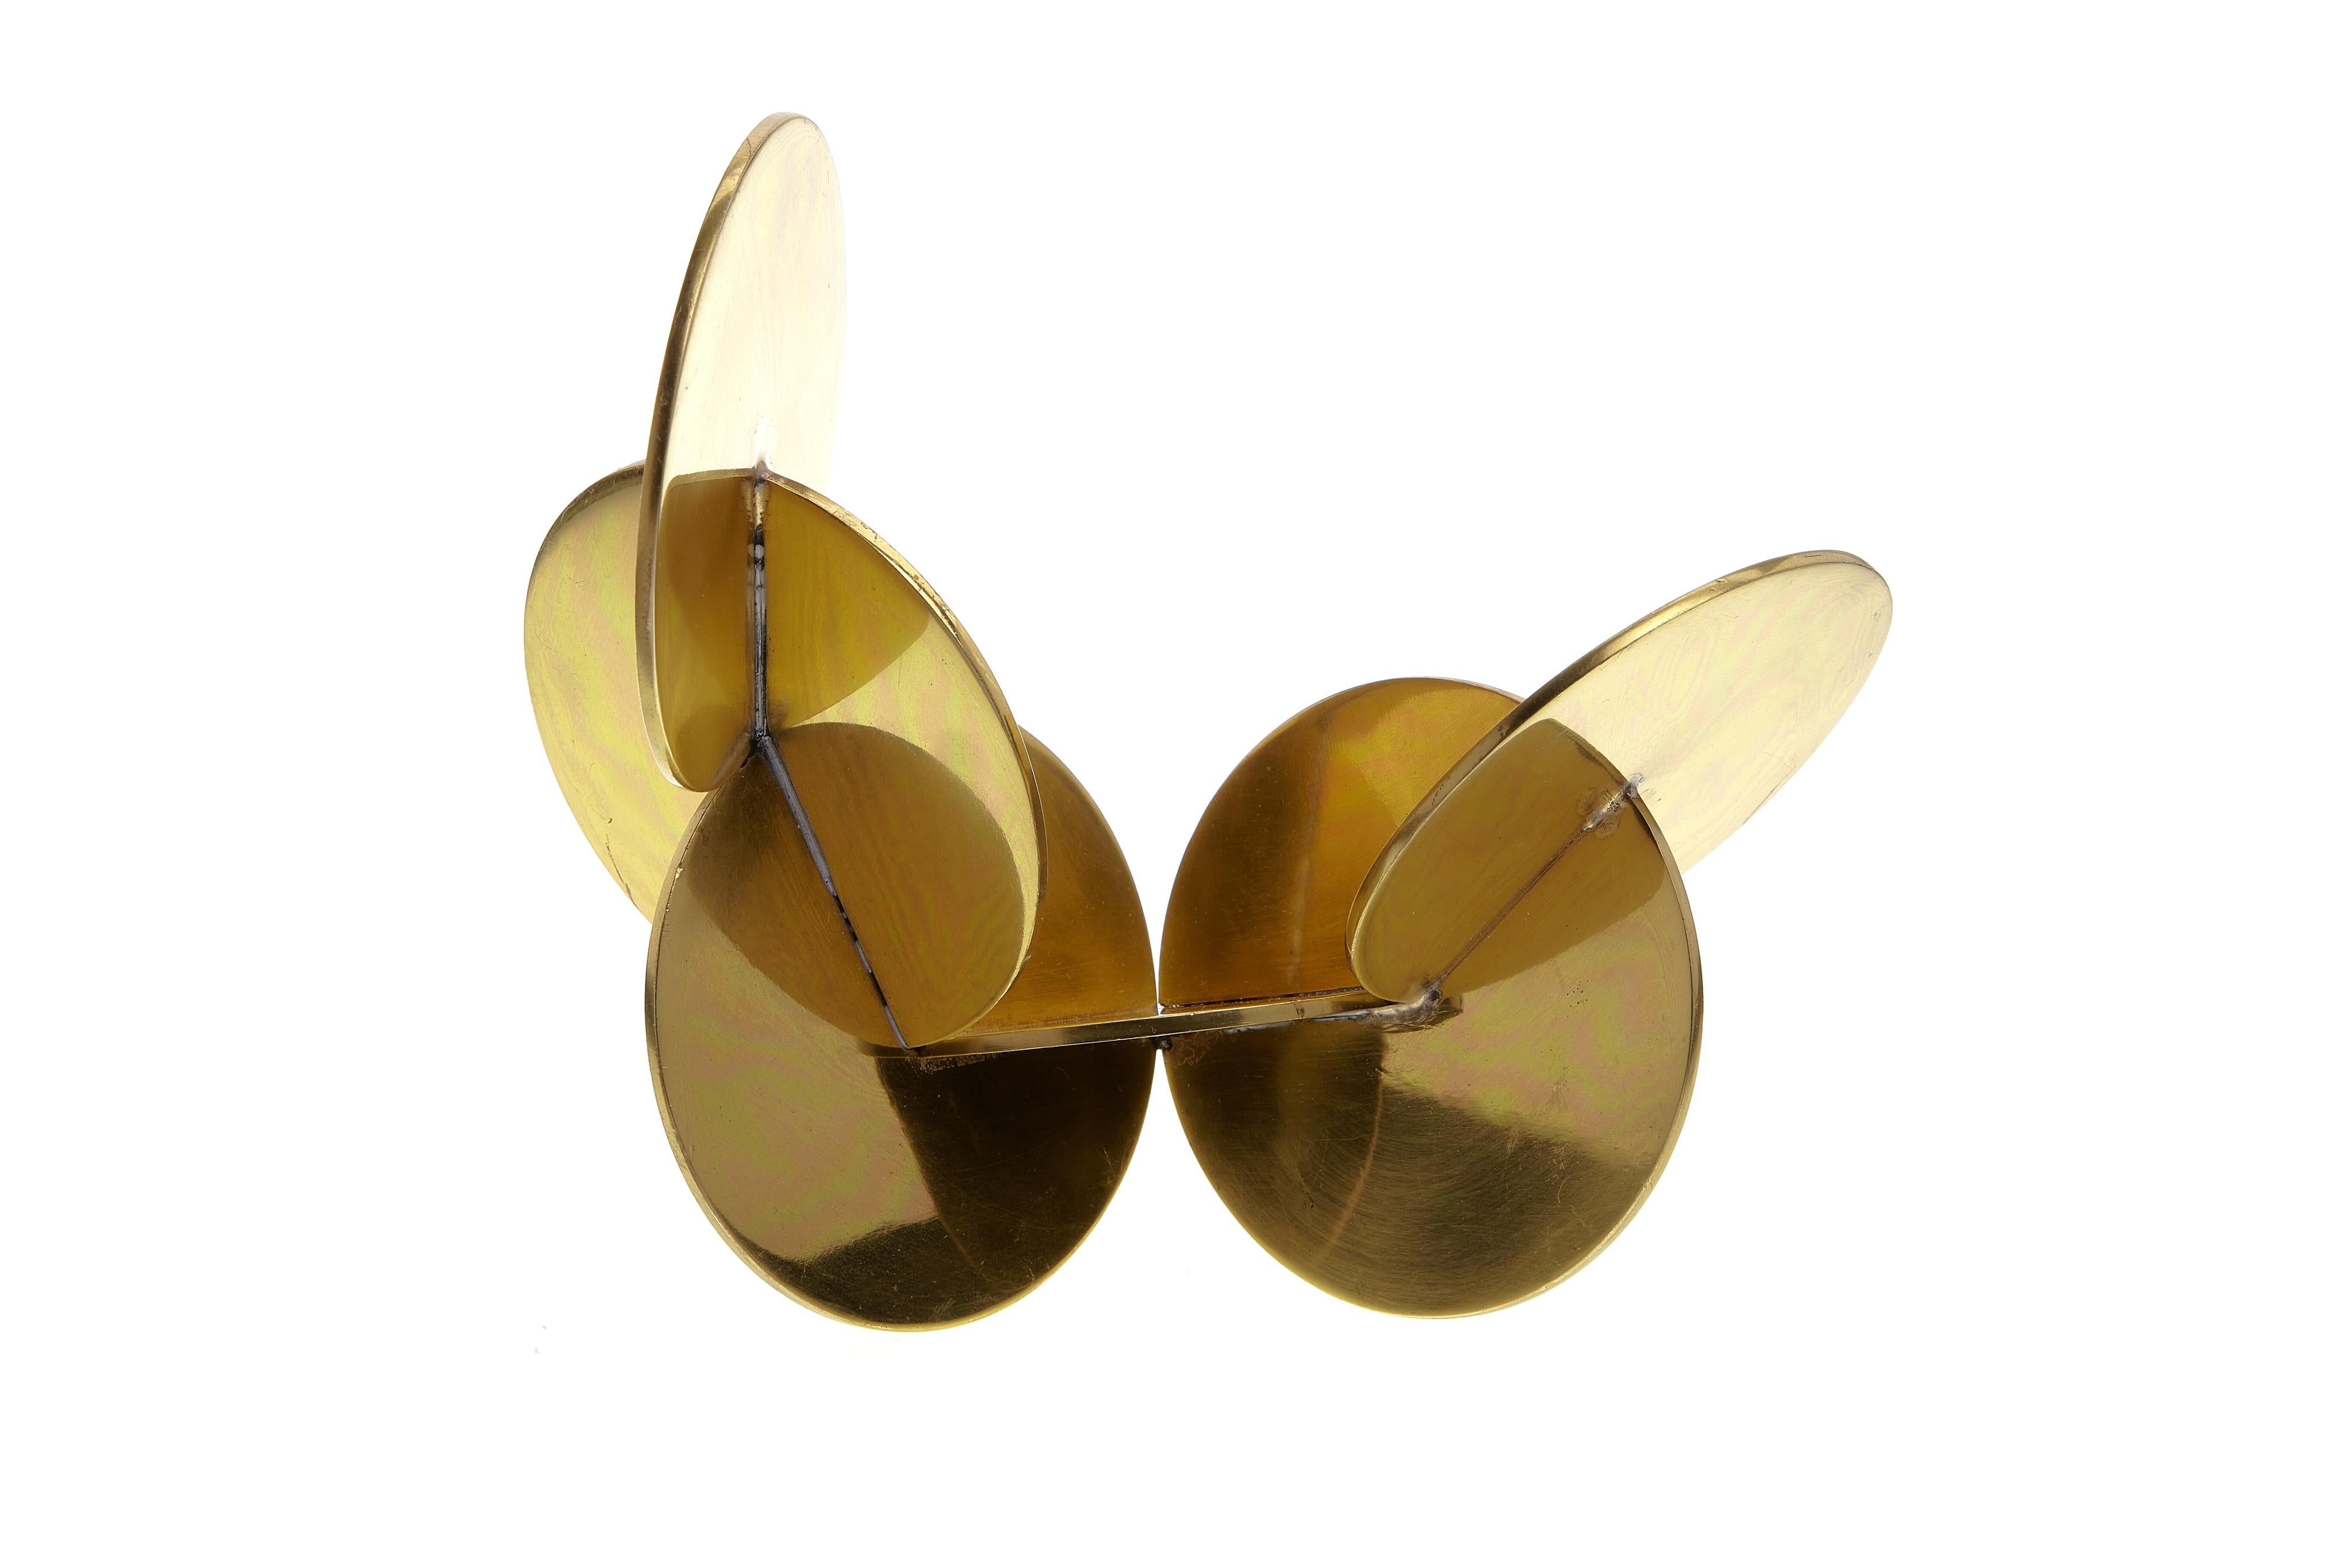 Late 20th Century Modernist Brass Sculpture with Interlocking Discs